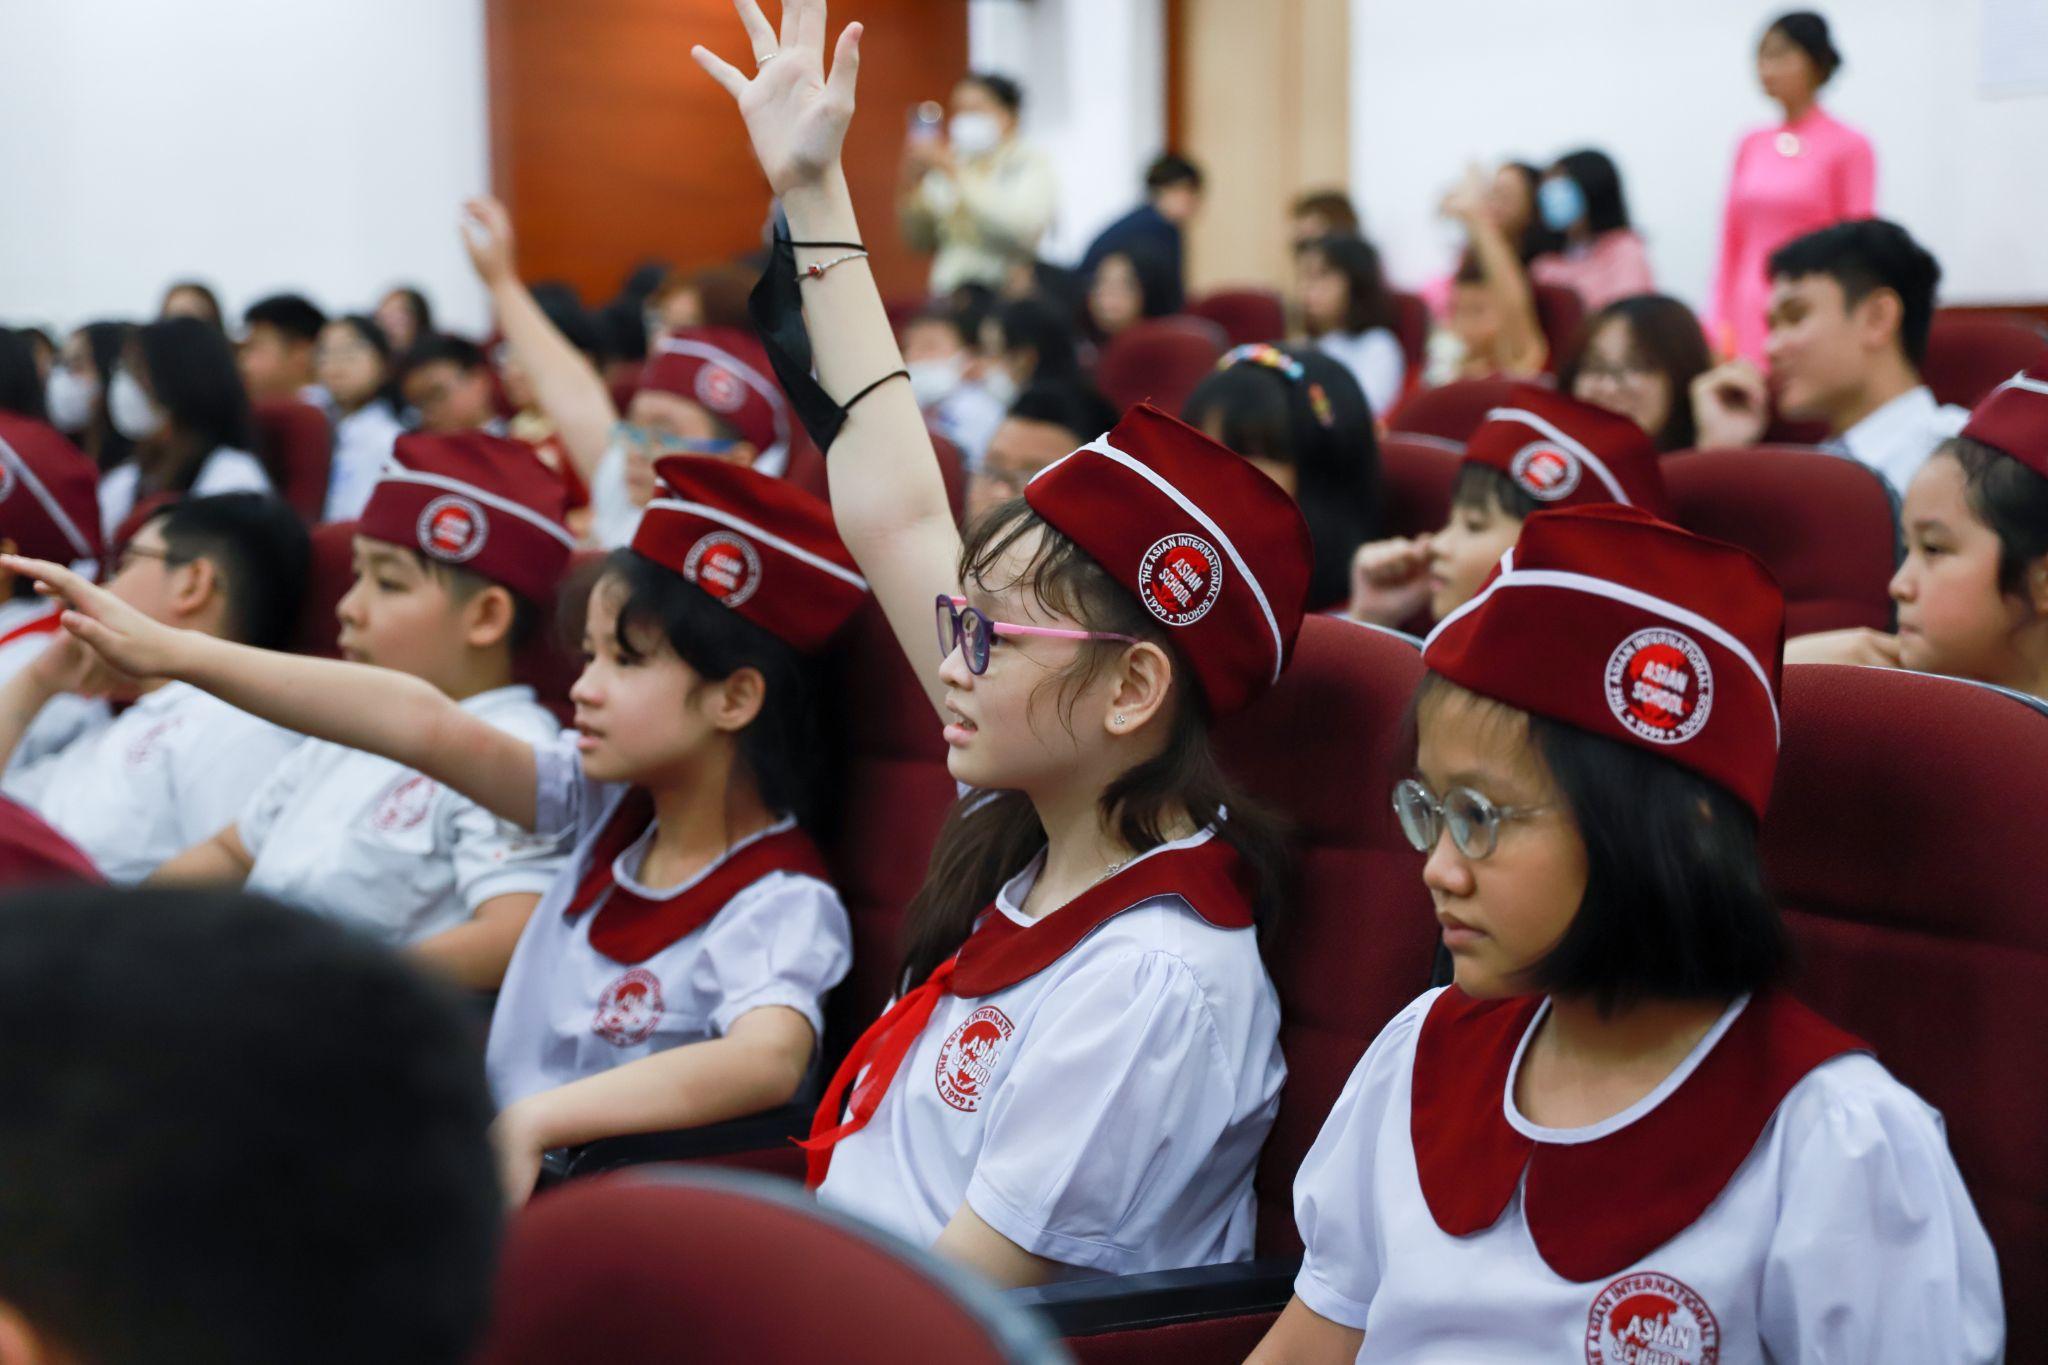 Học sinh Asian School chung tay bảo vệ tê giác